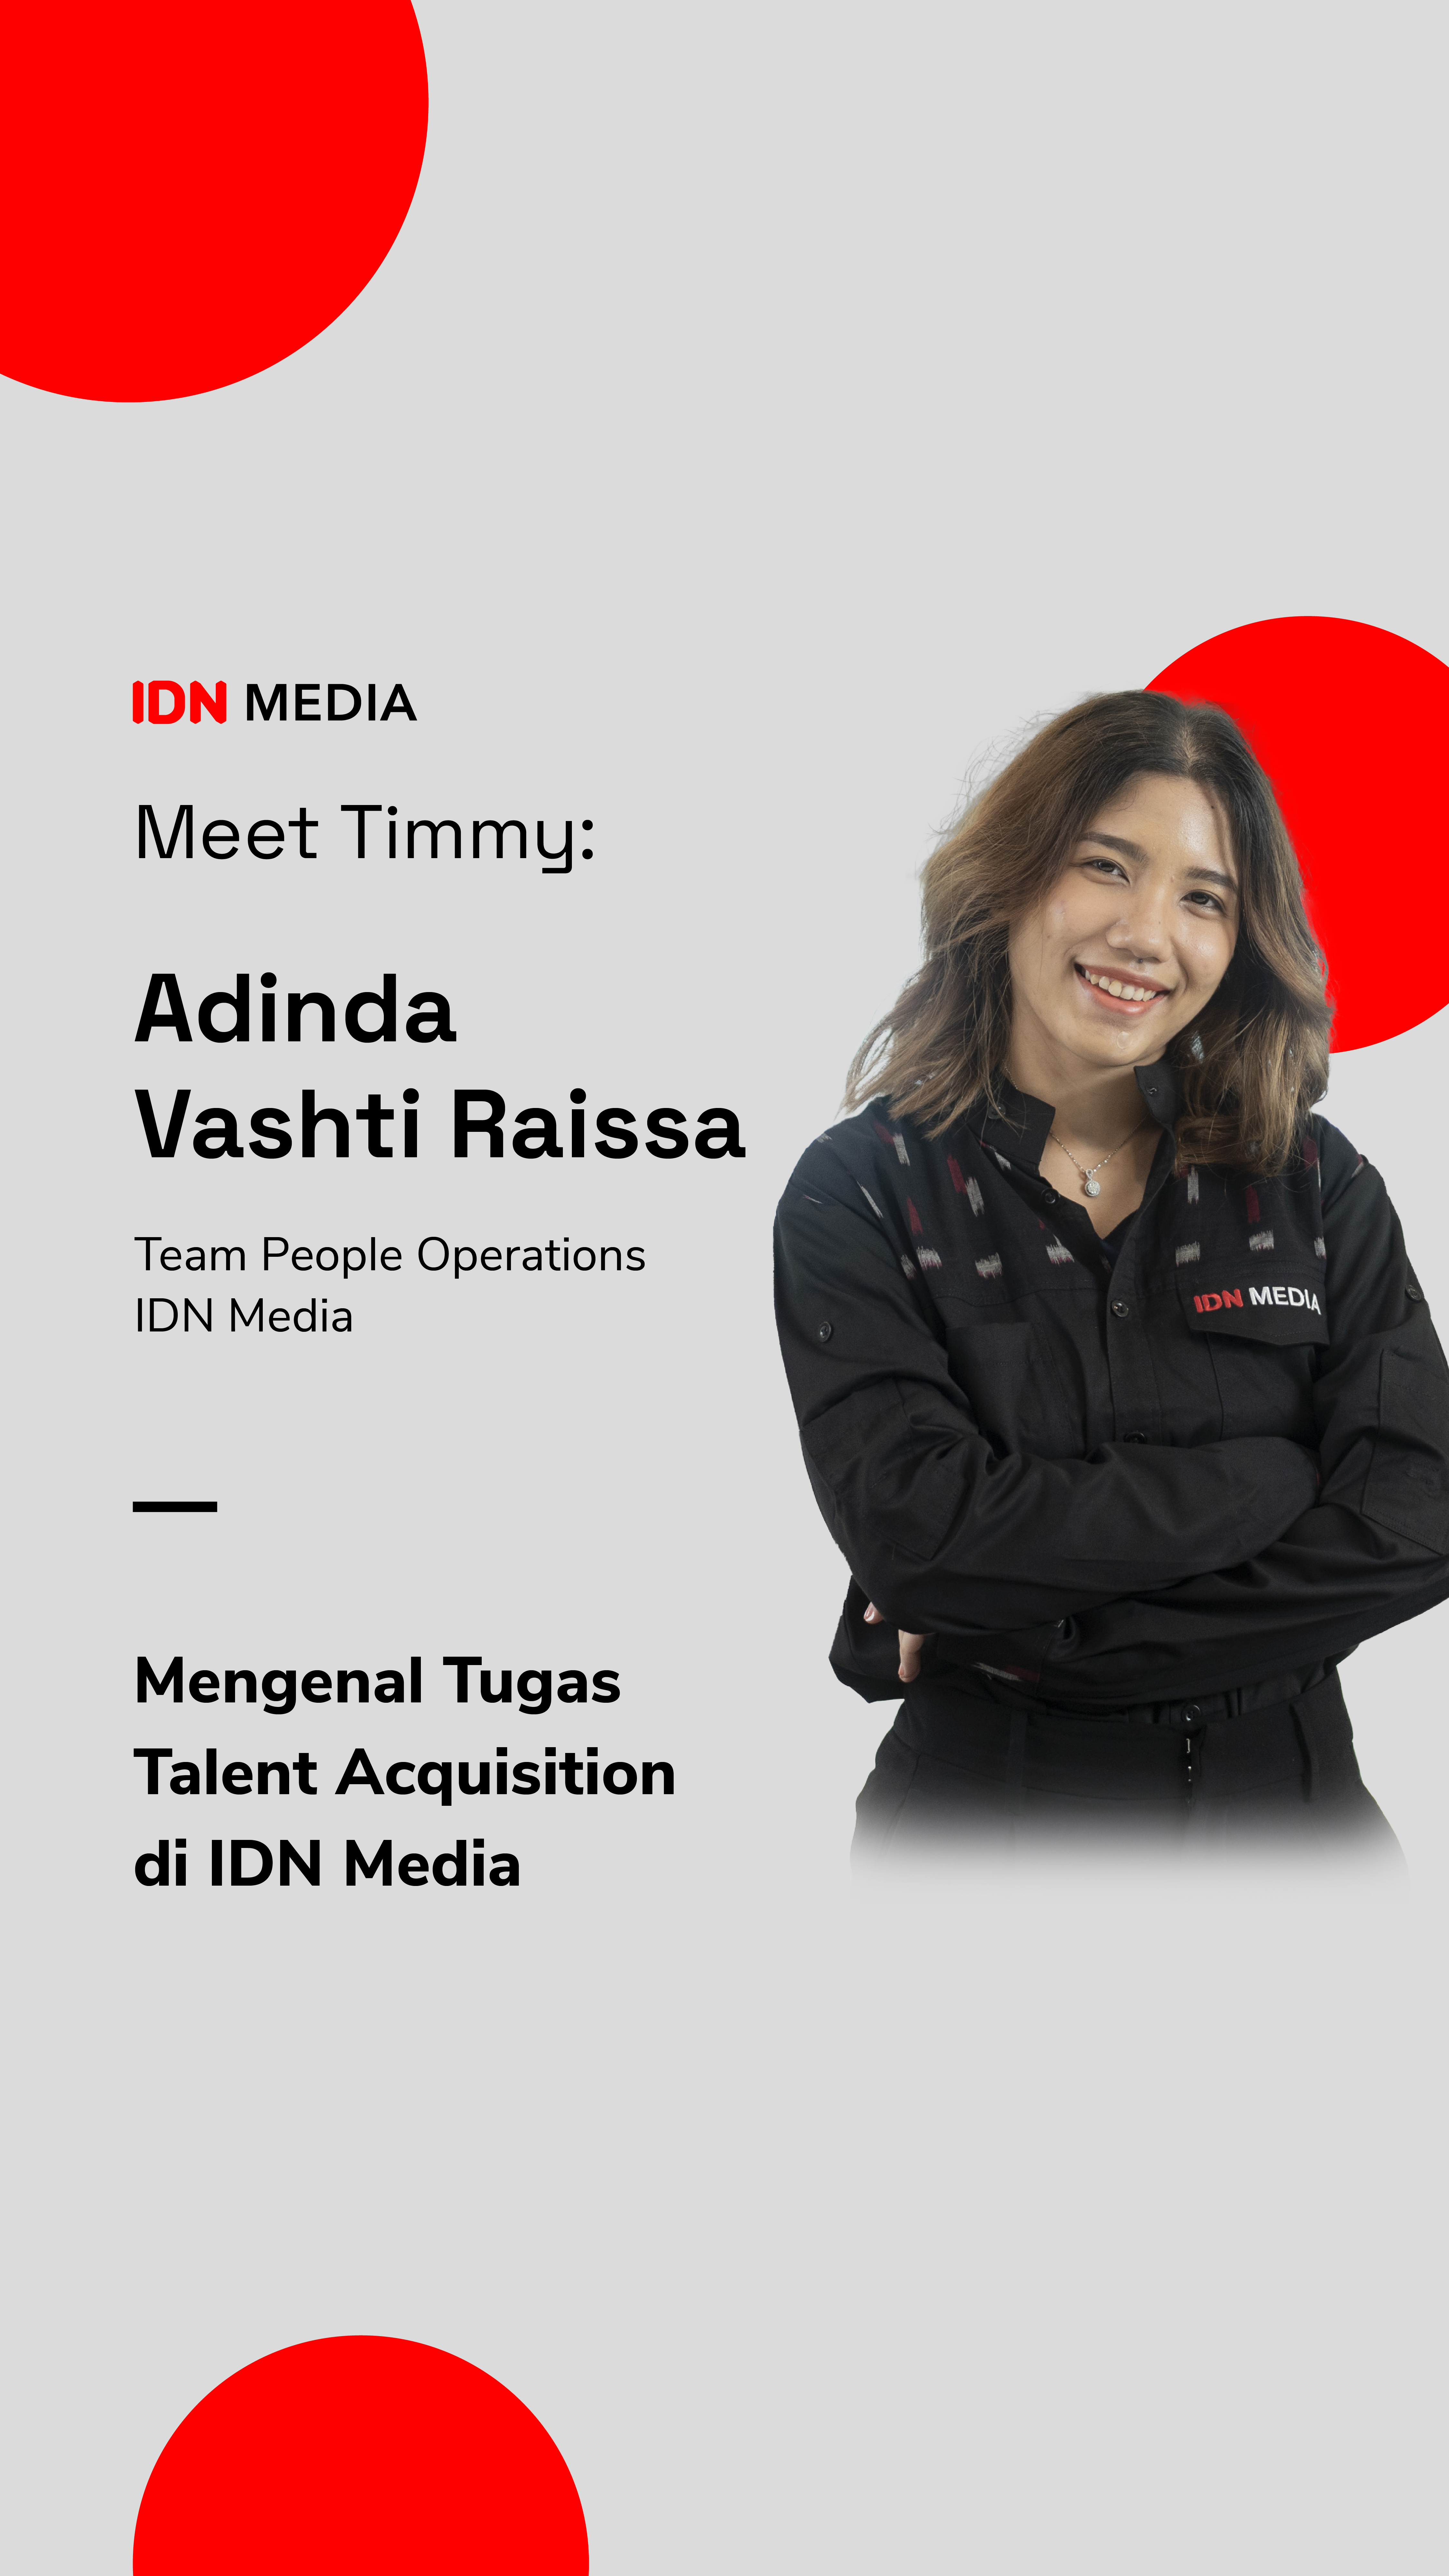 Meet Timmy: Mengenal Tugas Tim Talent Acquisition di IDN Media